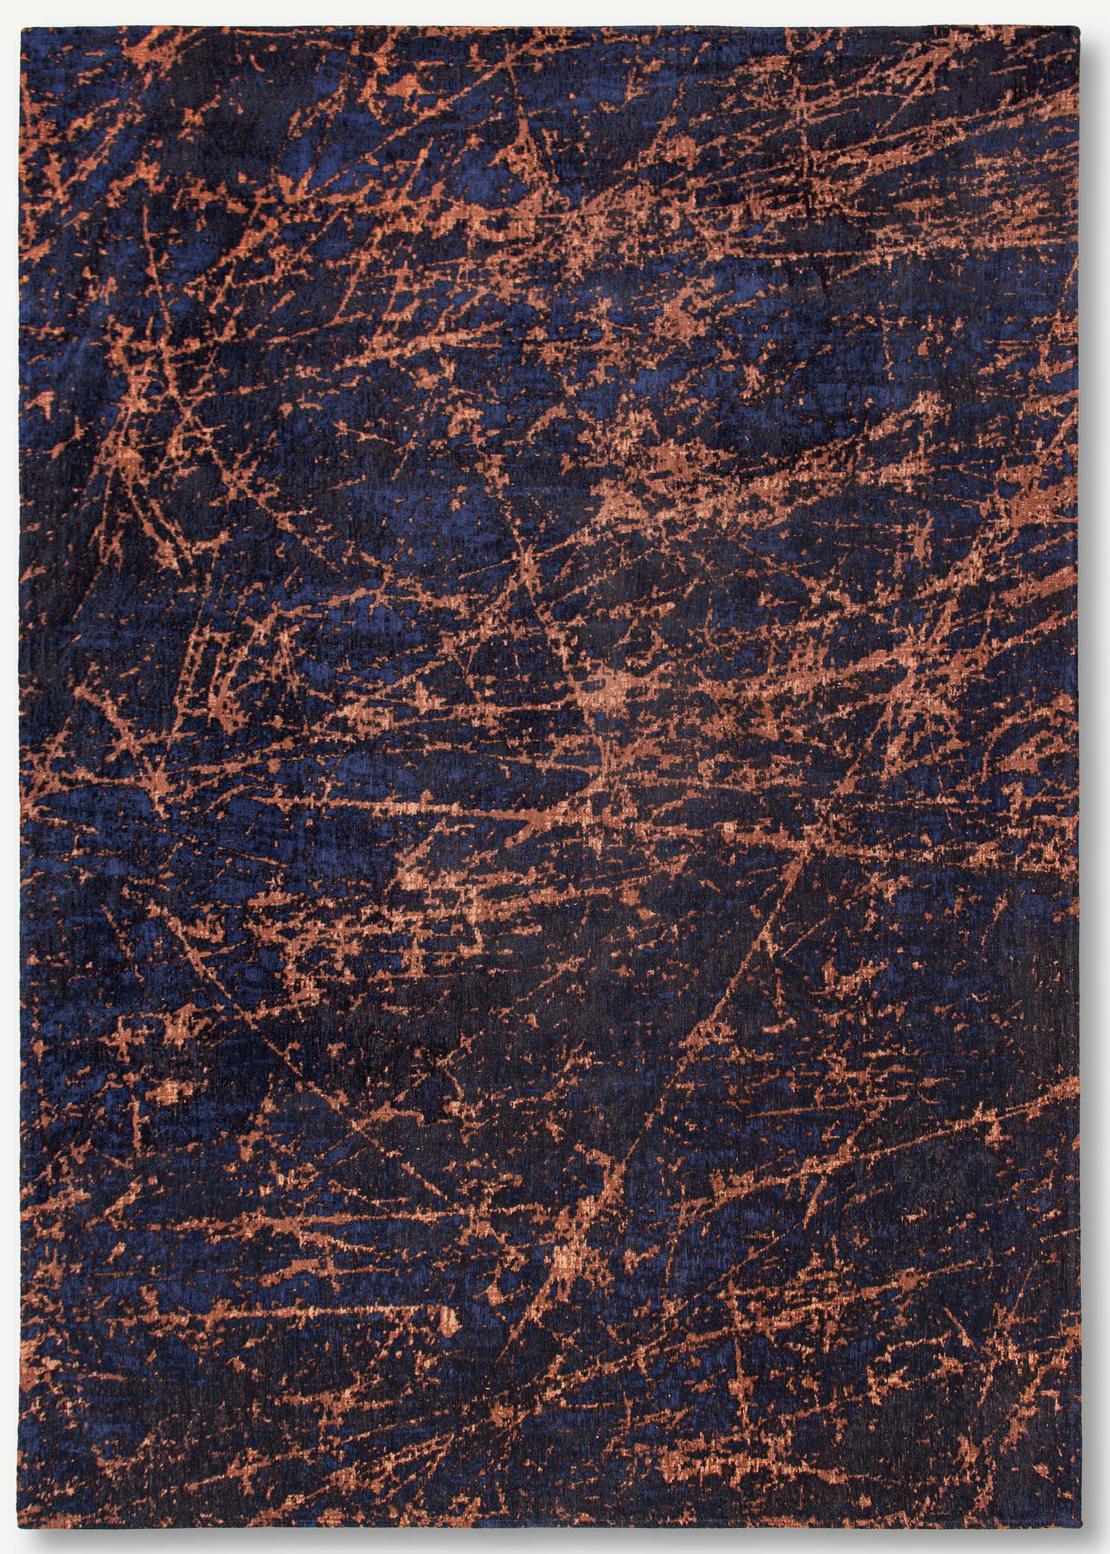 Art Black & Orange Belgian Rug ☞ Size: 4' 7" x 6' 7" (140 x 200 cm)